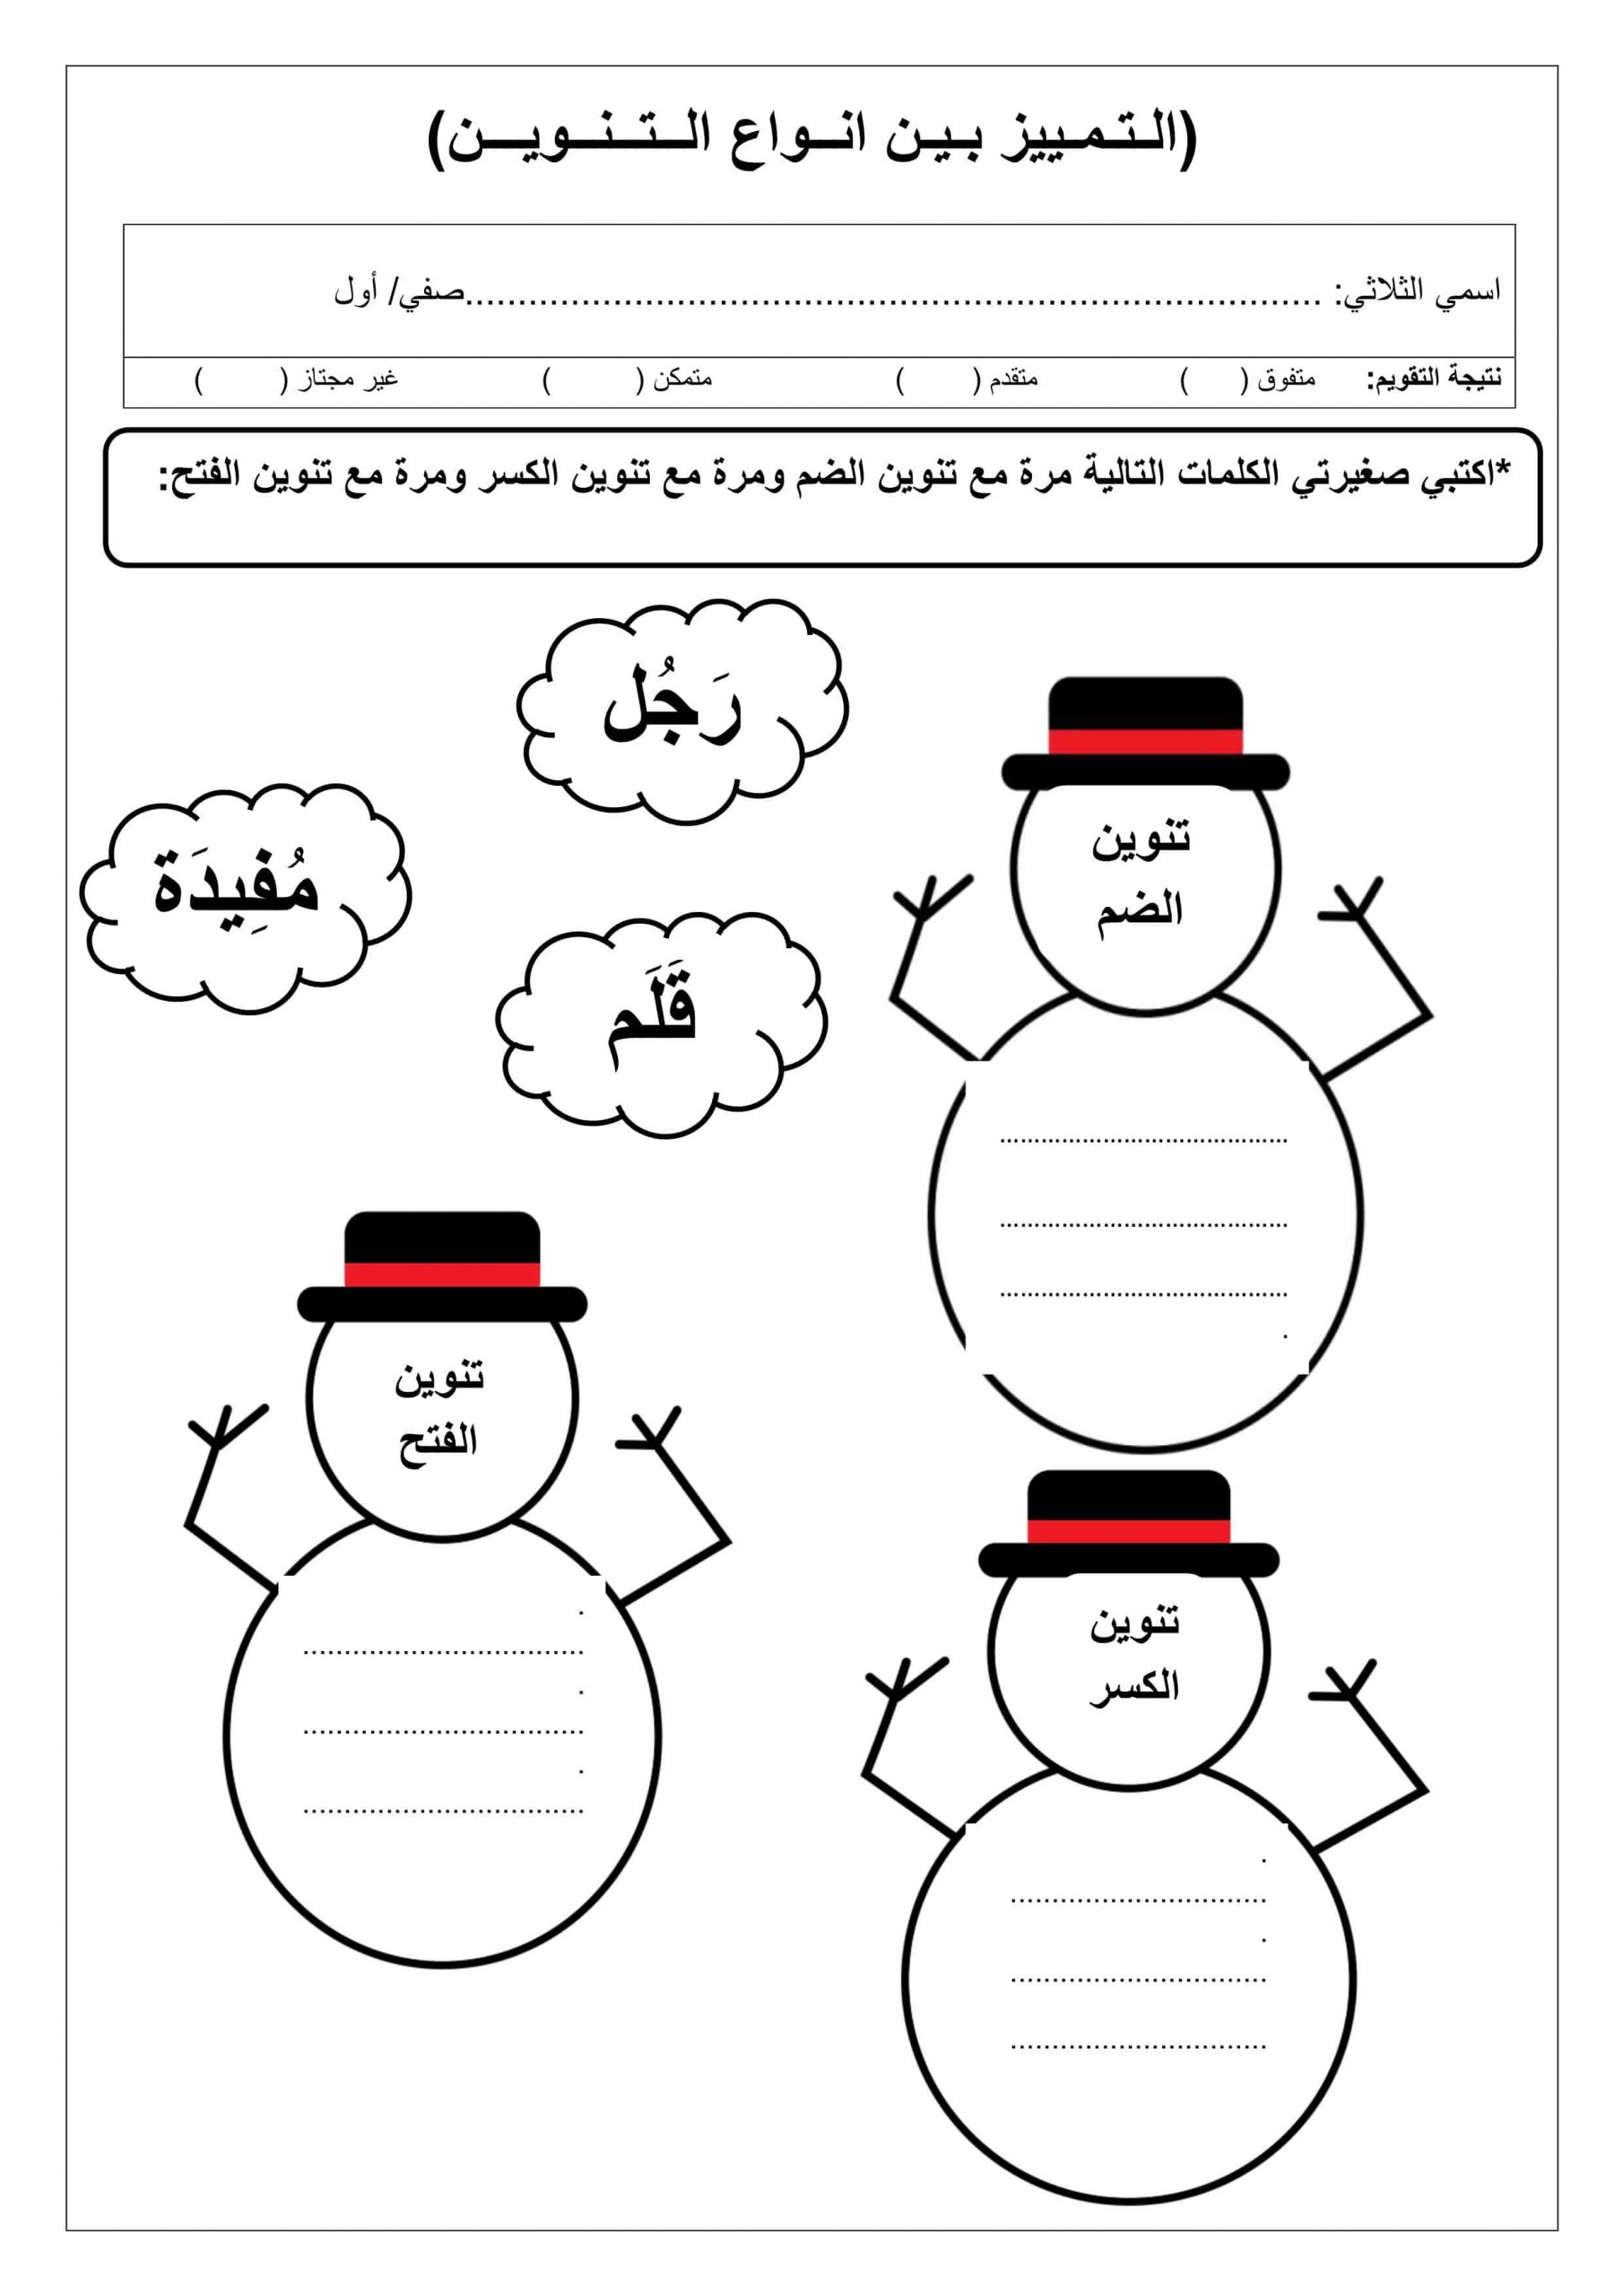 ورقة عمل التمييز بين أنواع التنوين الصف الأول مادة اللغة العربية 